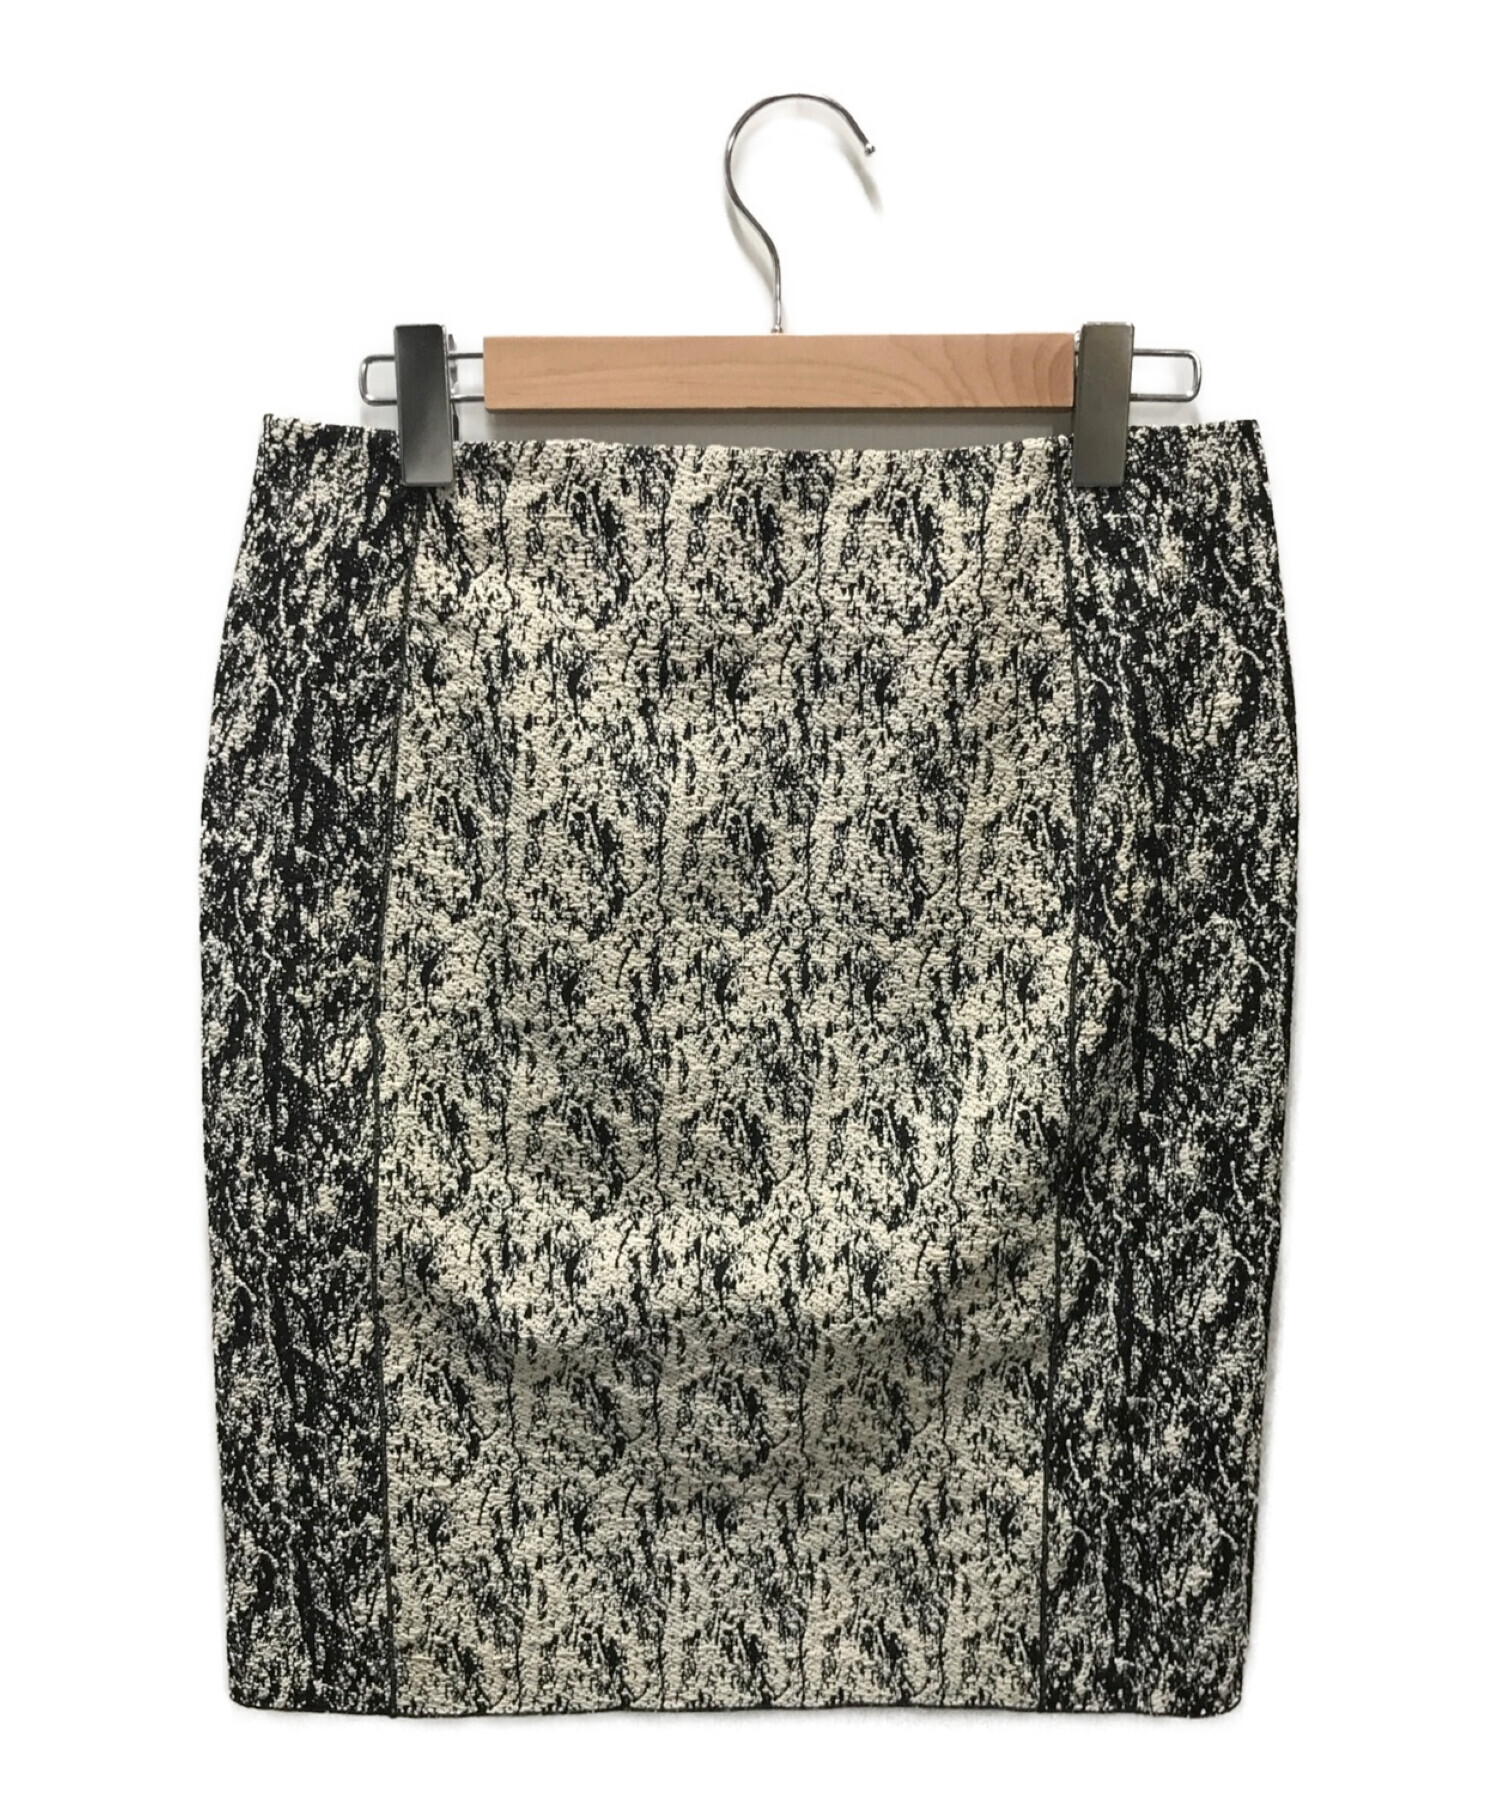 14,699円セリーヌのツイードスカート